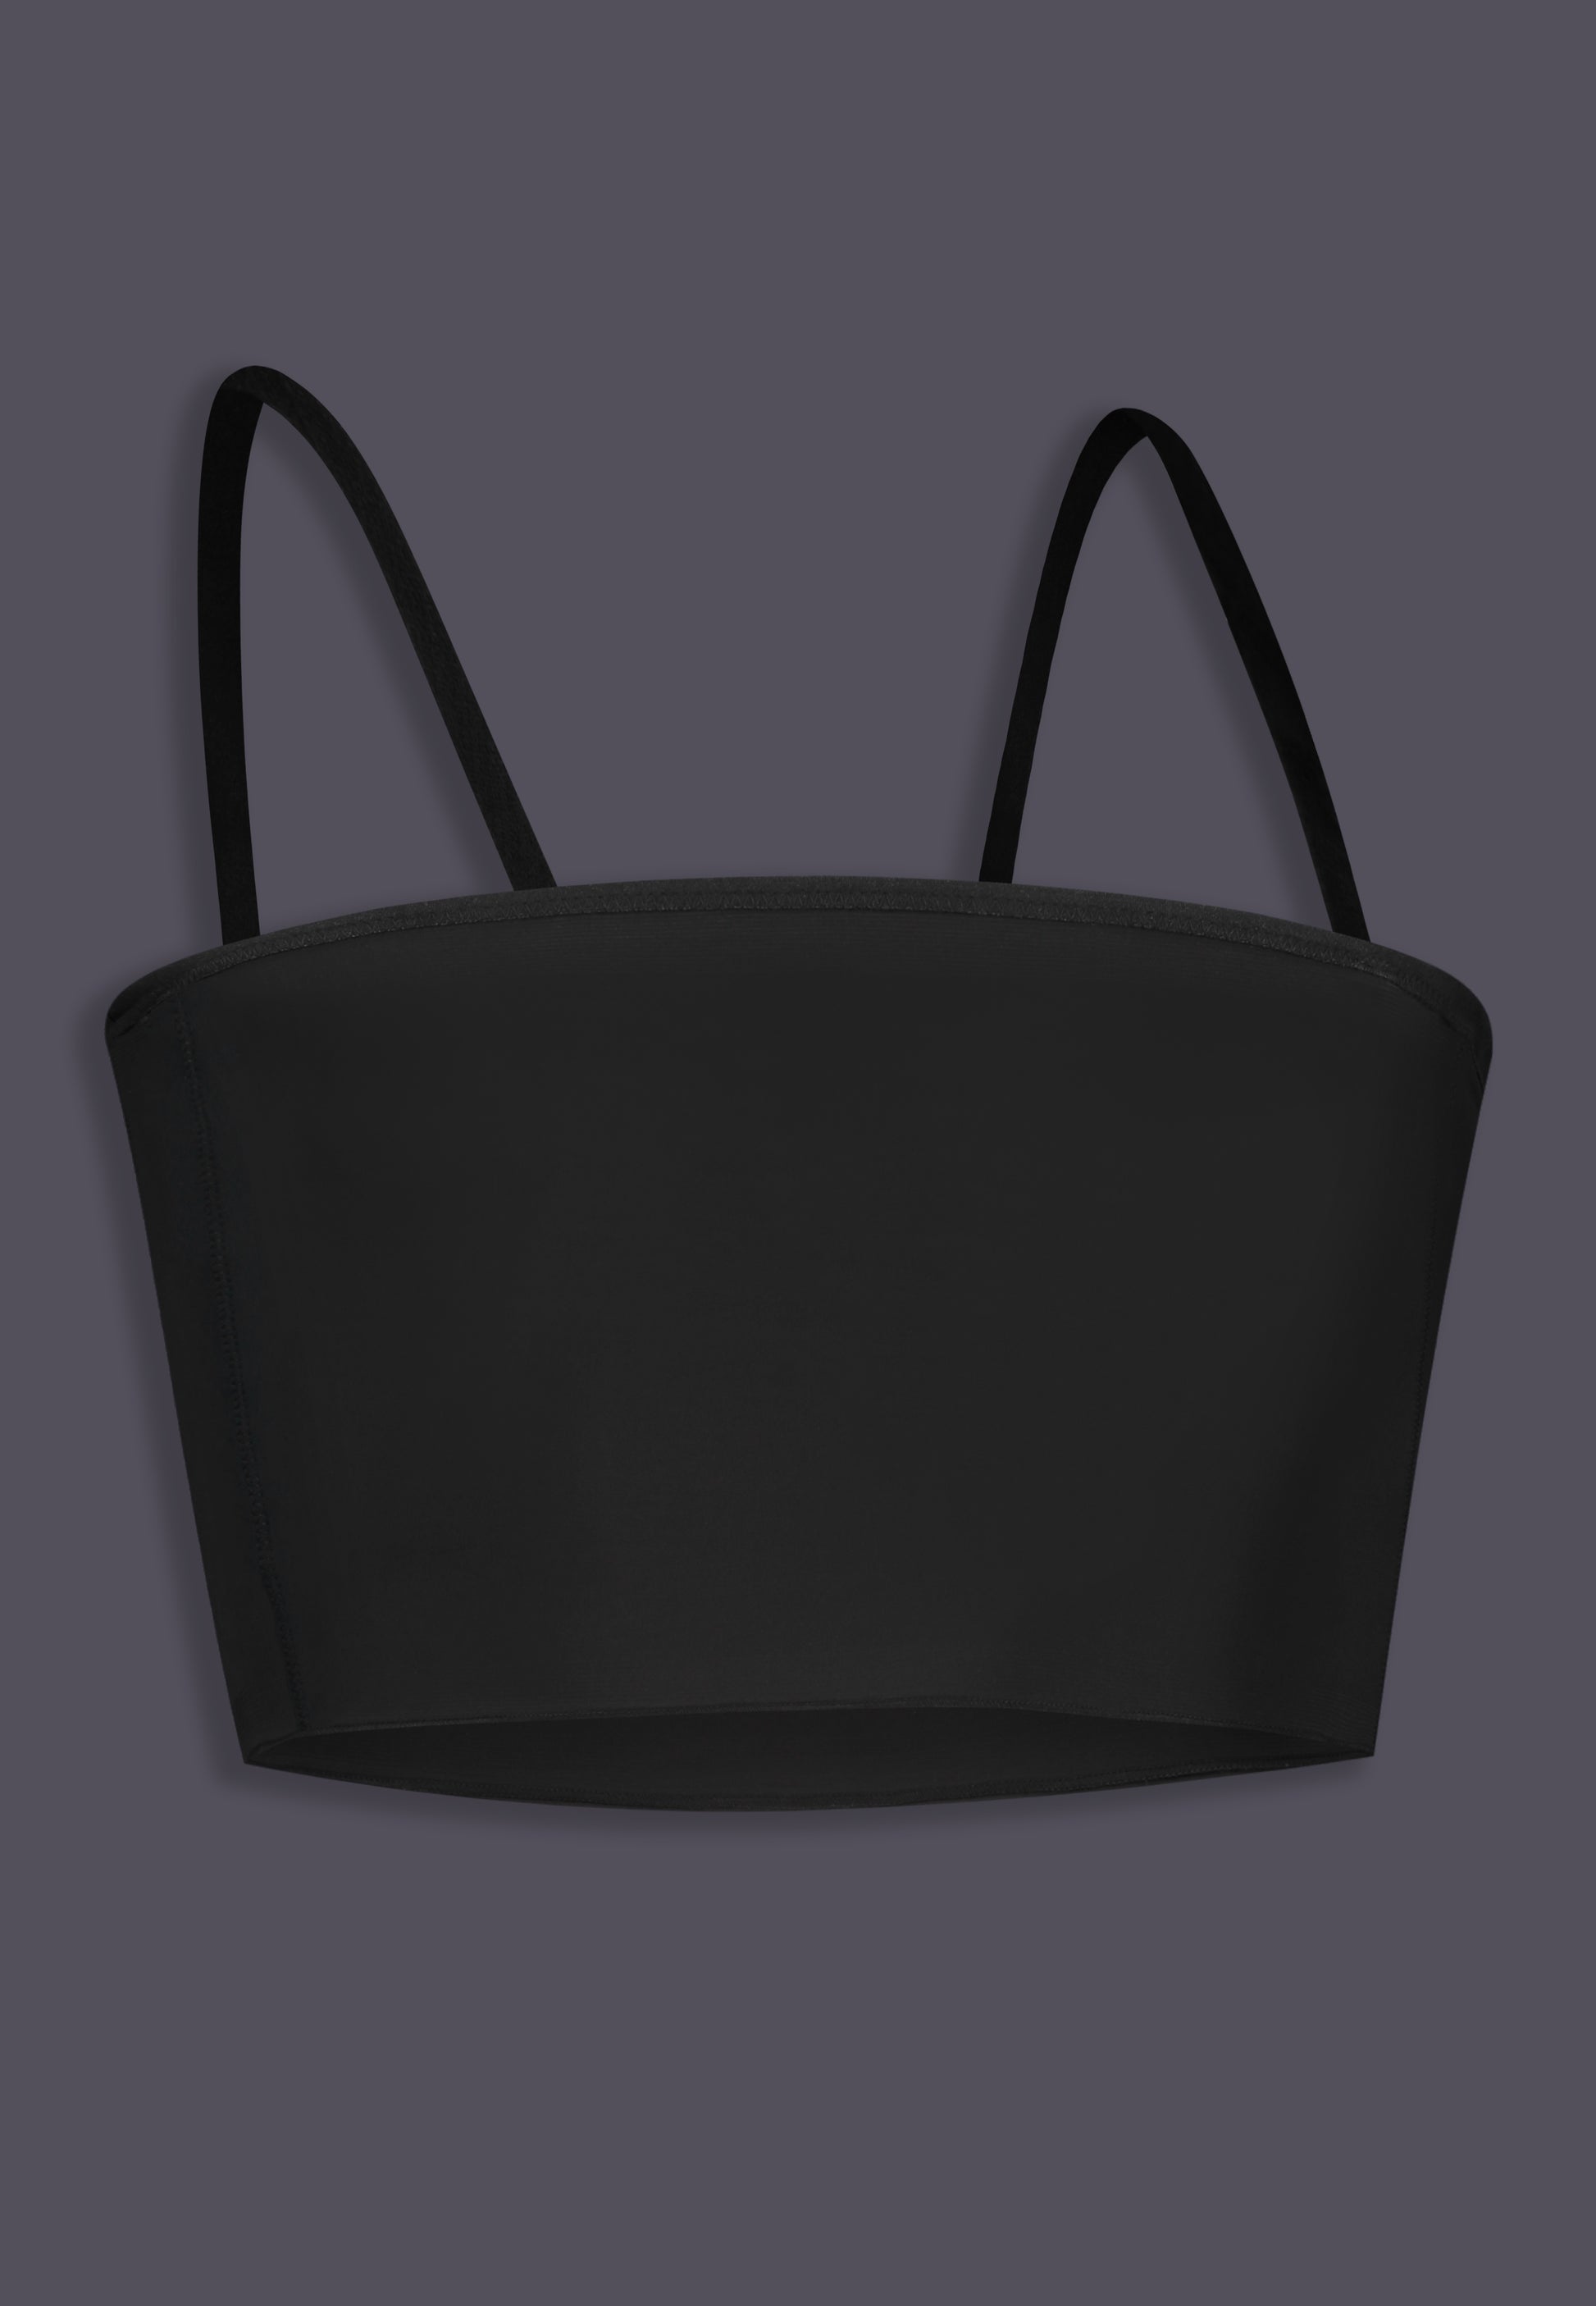 Budget Binder Band black, with the optional shoulder straps